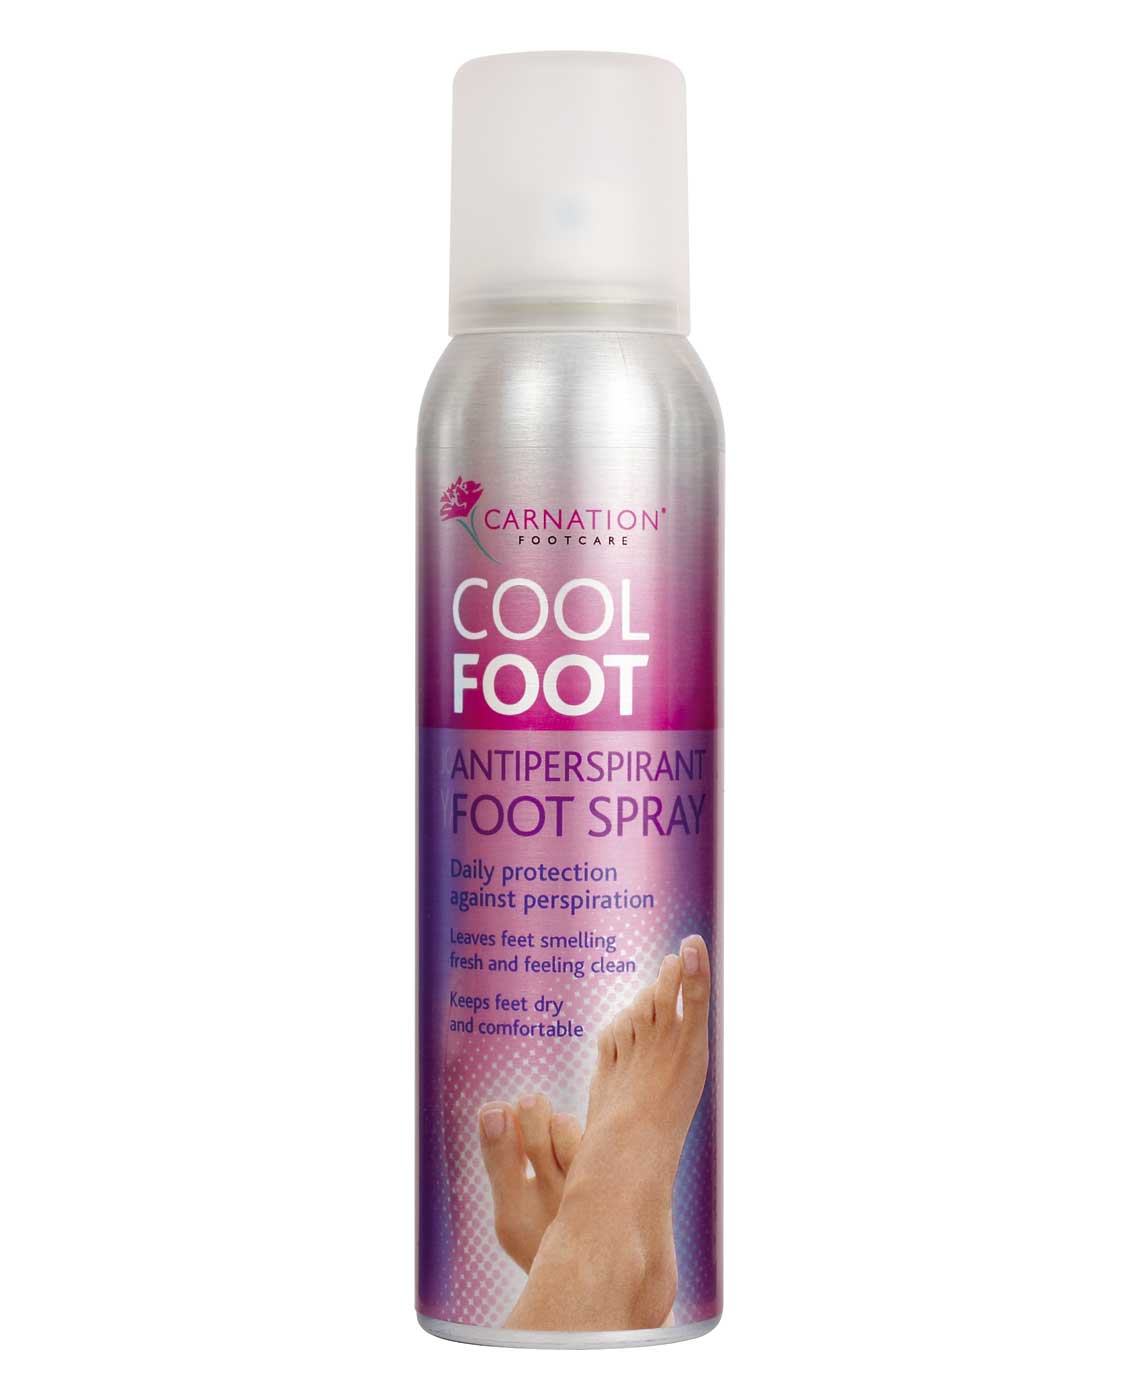 Carnation Cool Foot Antiperspirant Foot Spray